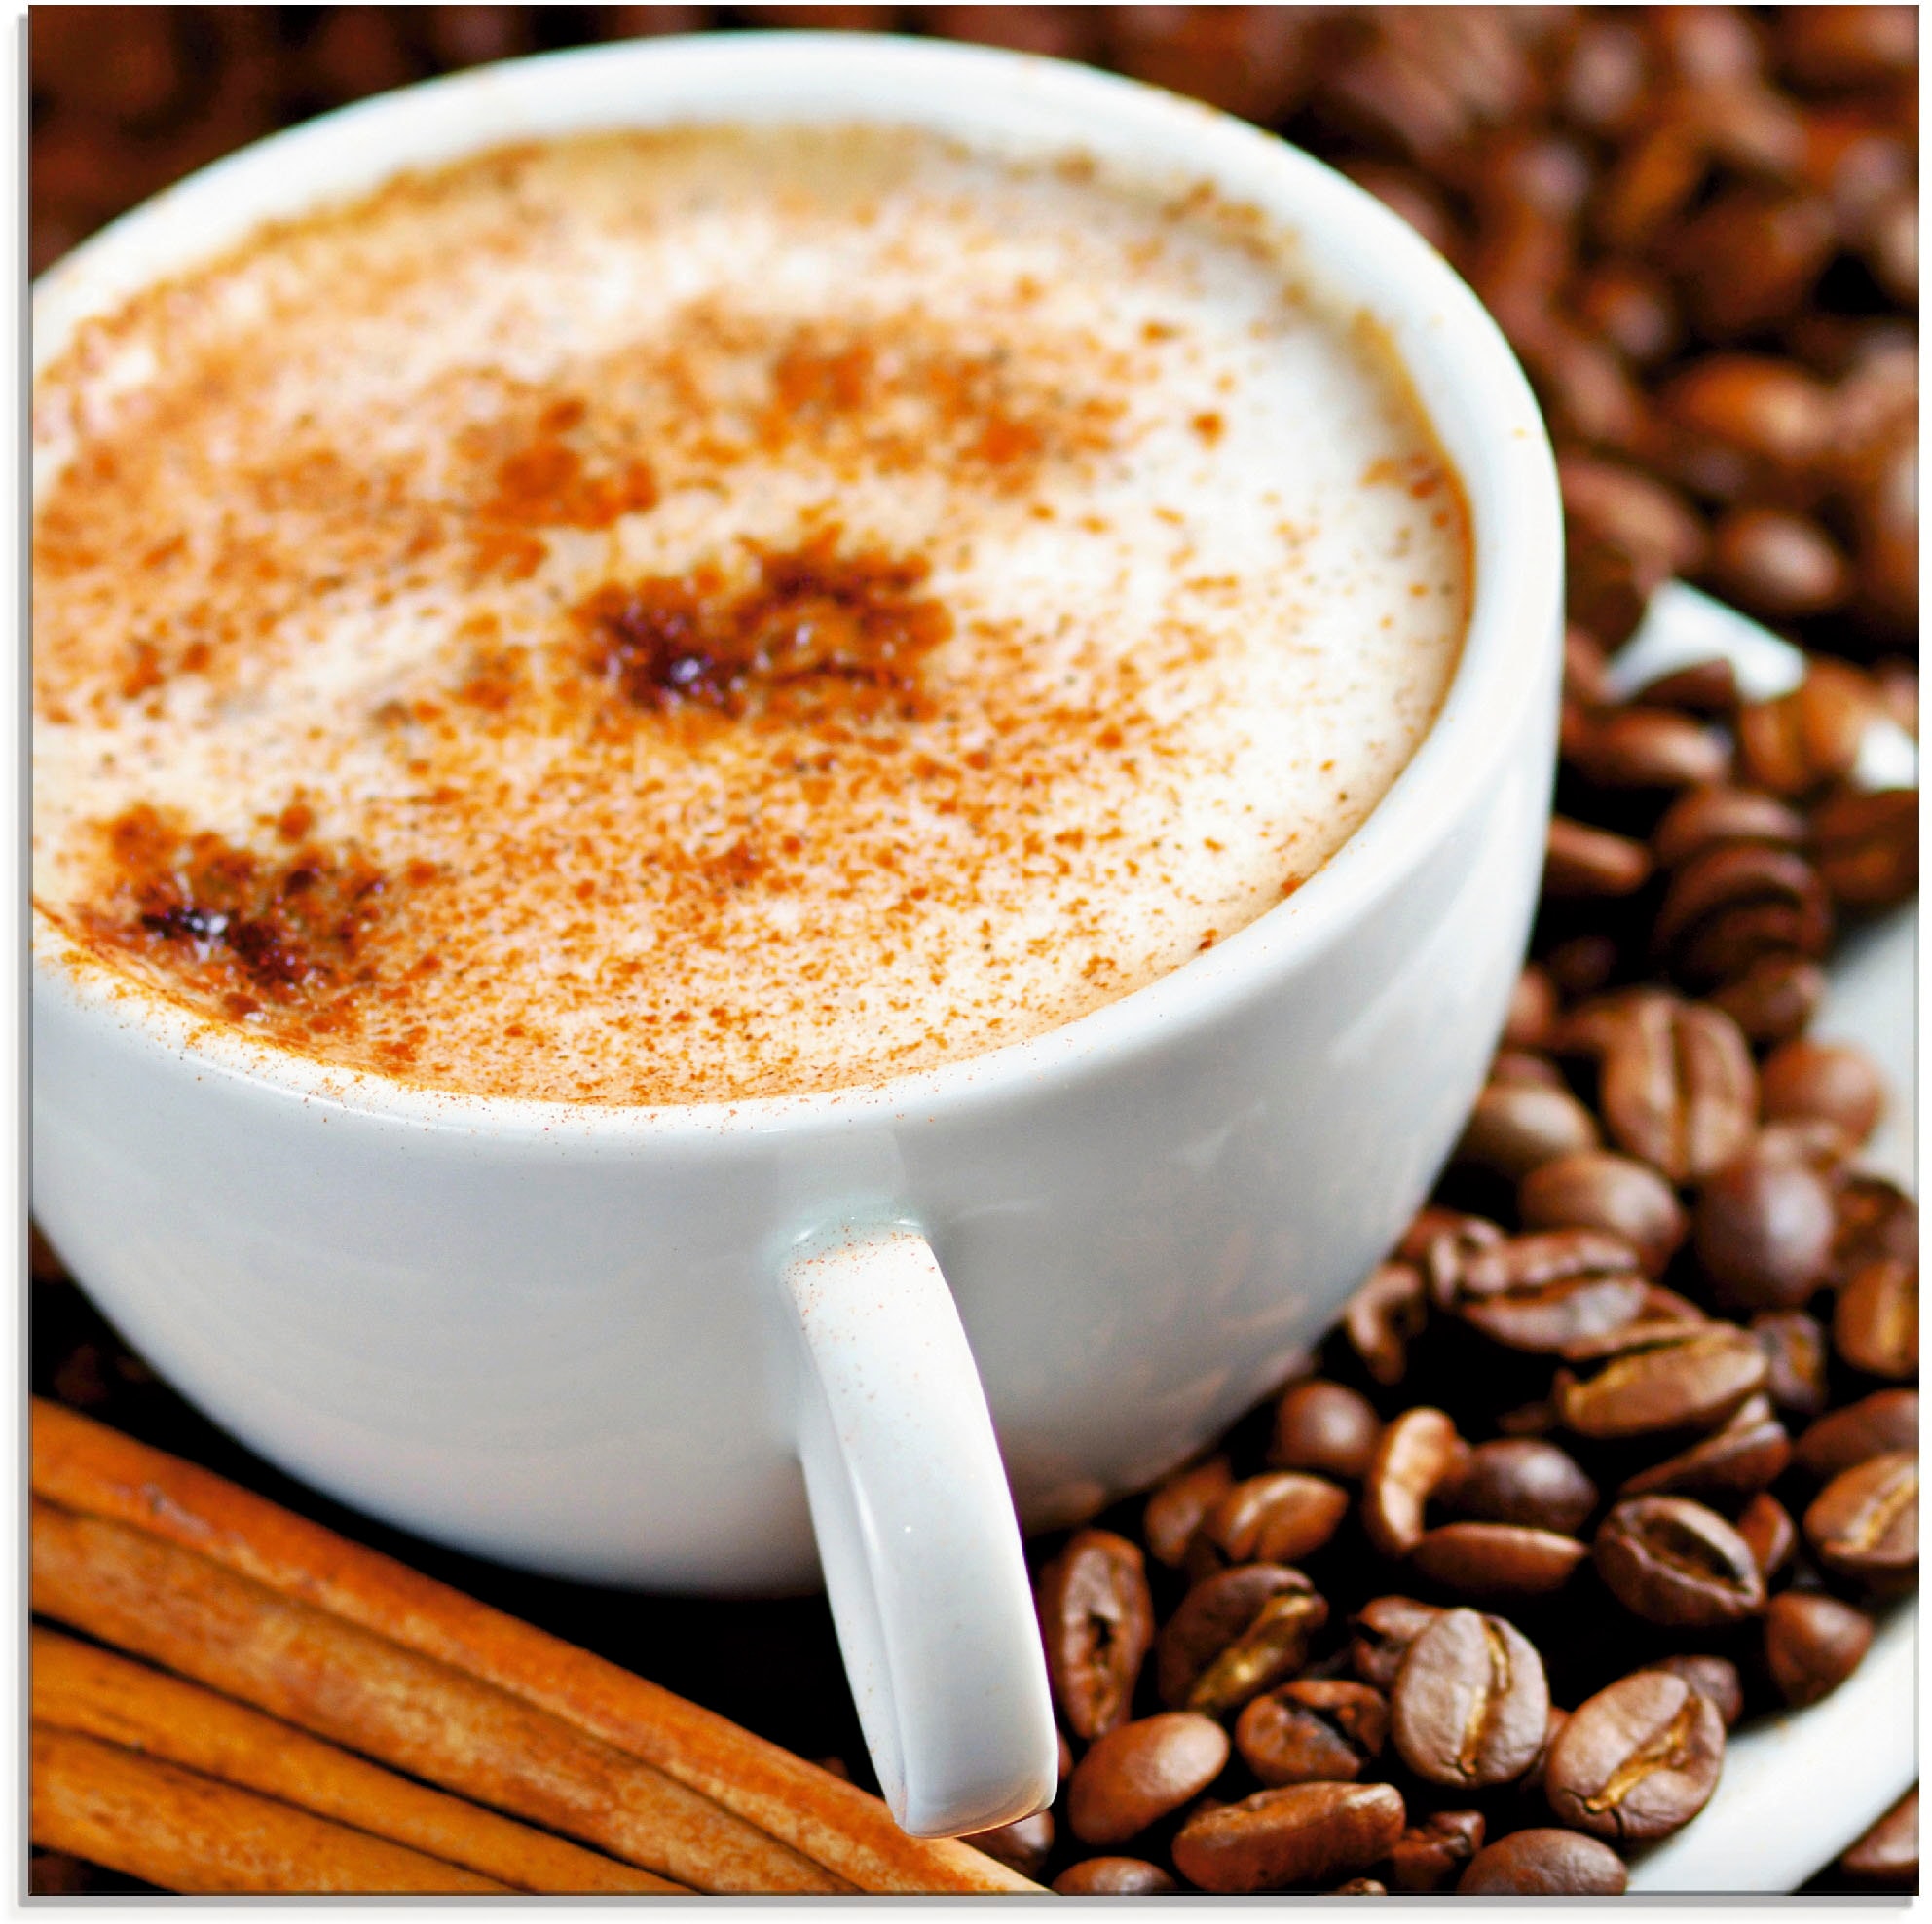 Artland Glasbild "Cappuccino - Kaffee", Getränke, (1 St.), in verschiedenen Größen